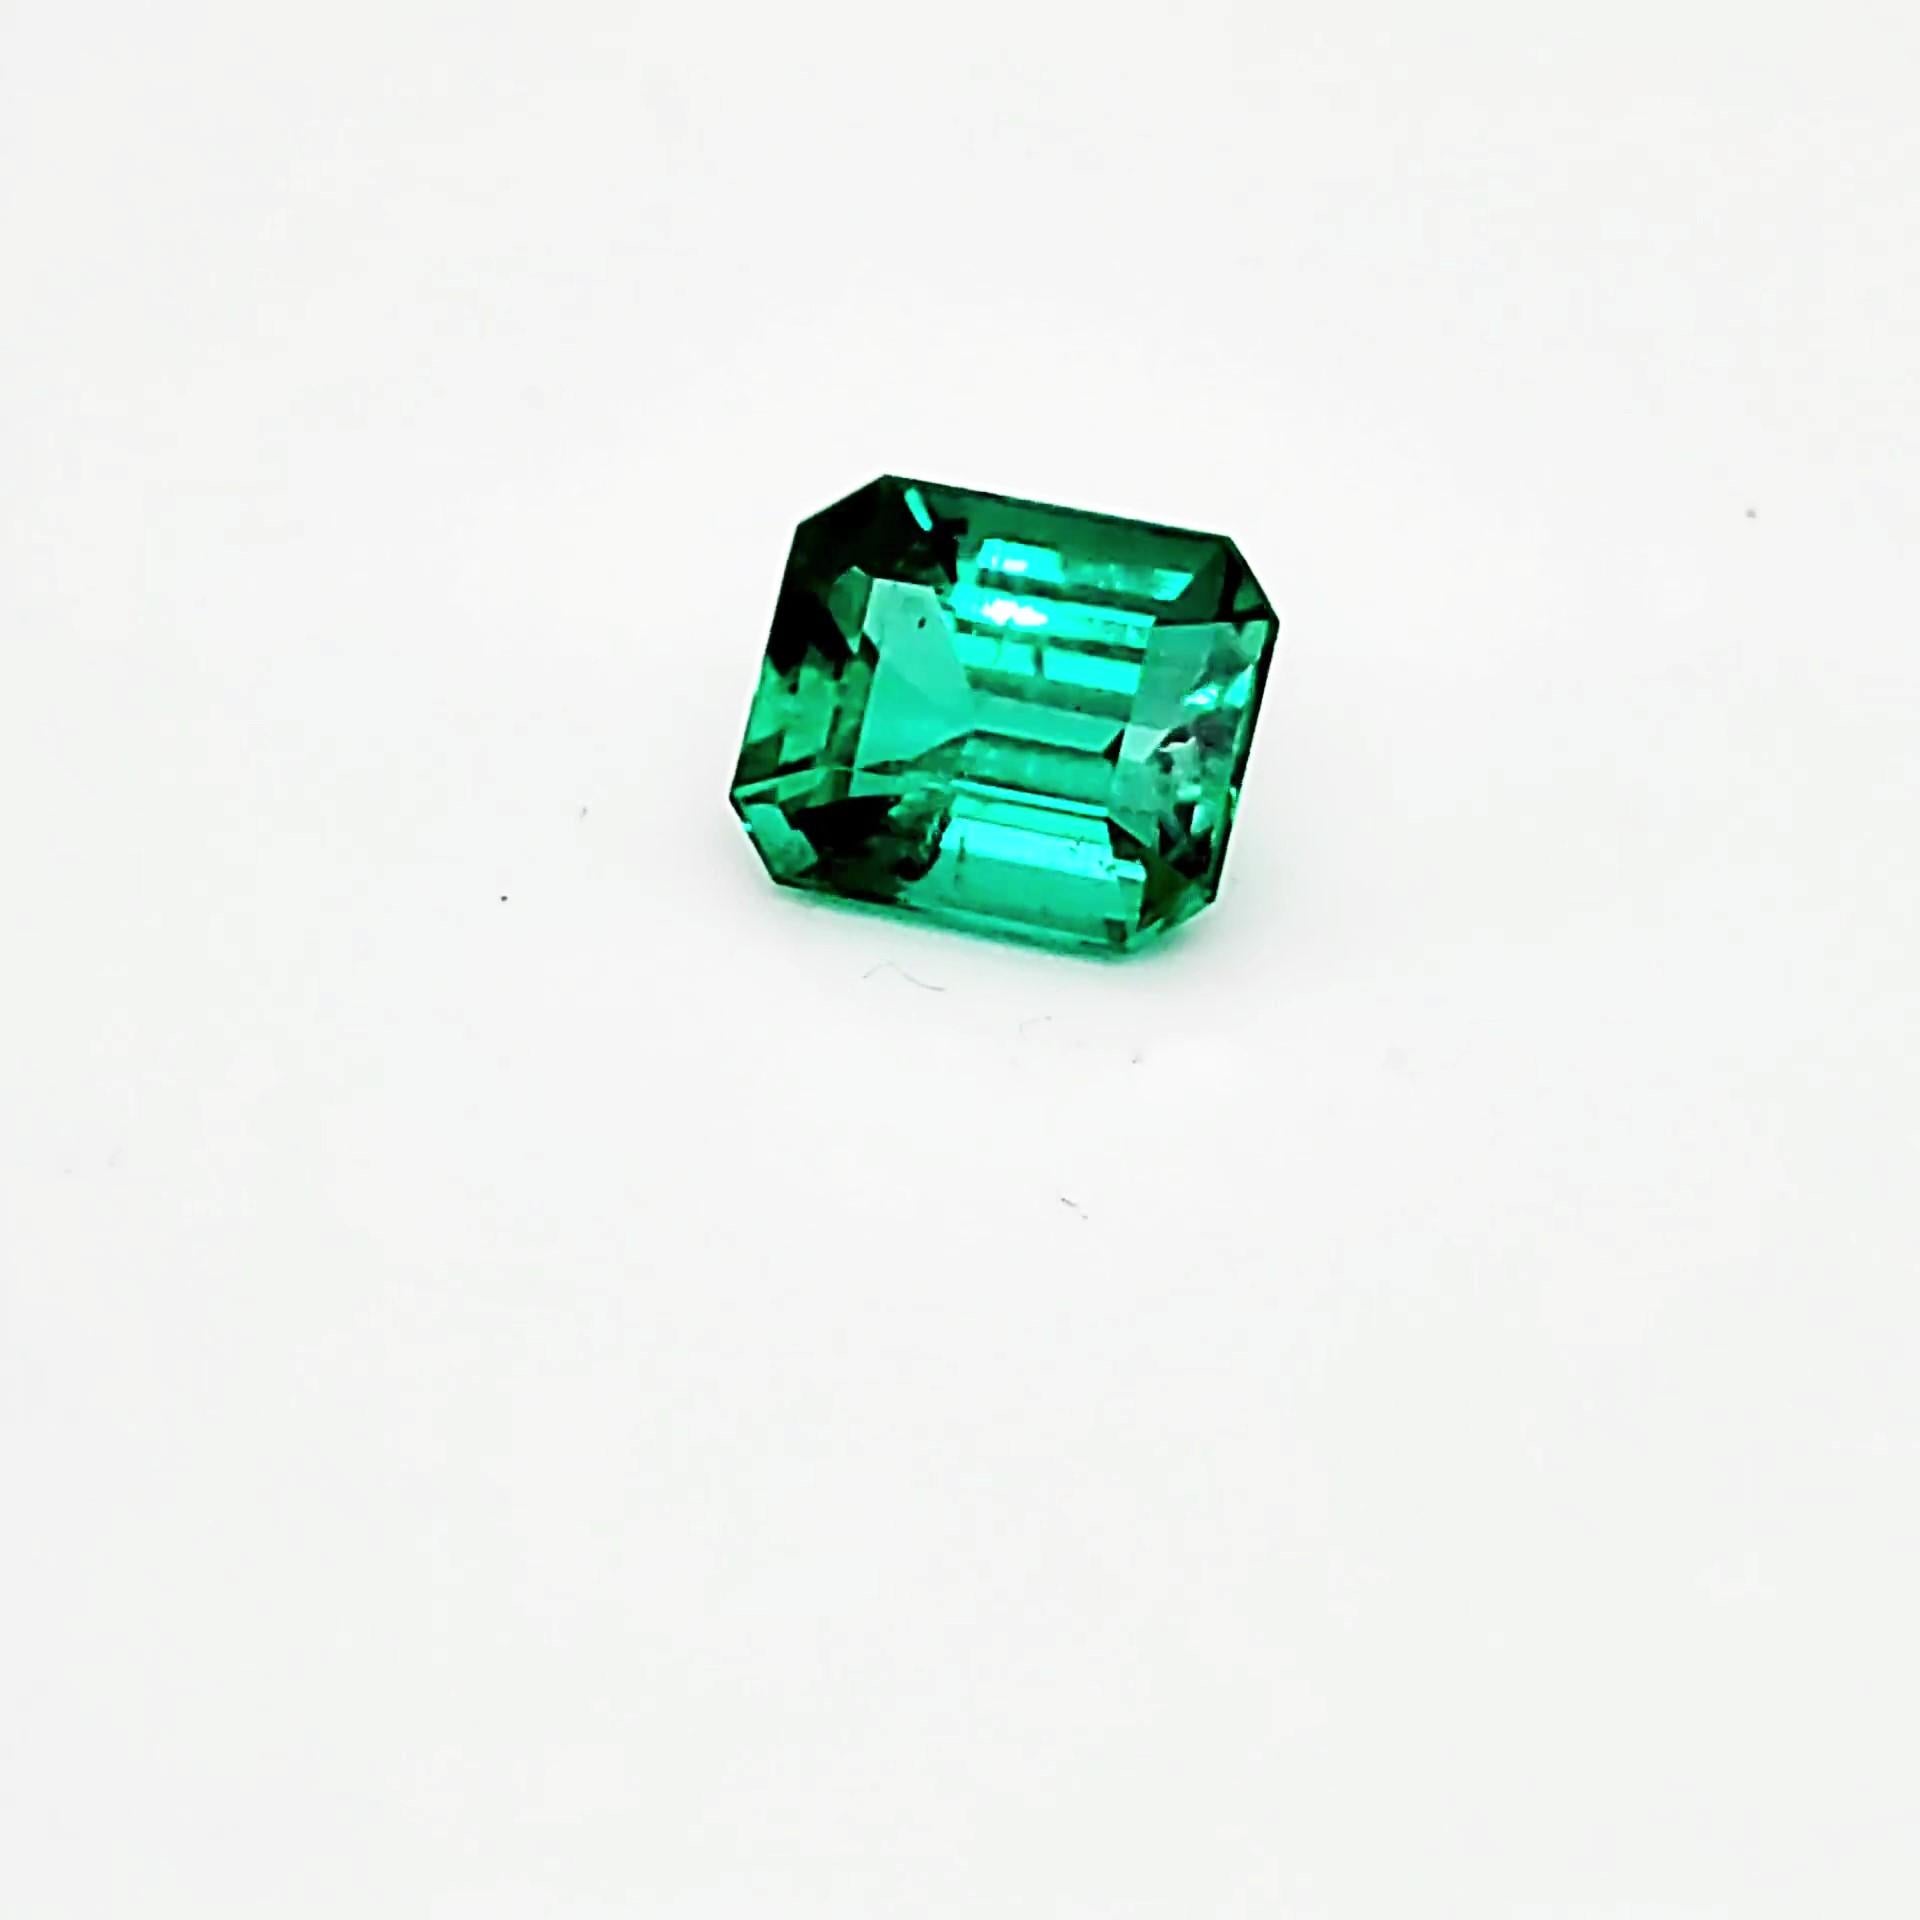 FERRUCCI GIA Certified 4.53 Carat Emerald Cut Emerald Diamond Platinum Ring 3